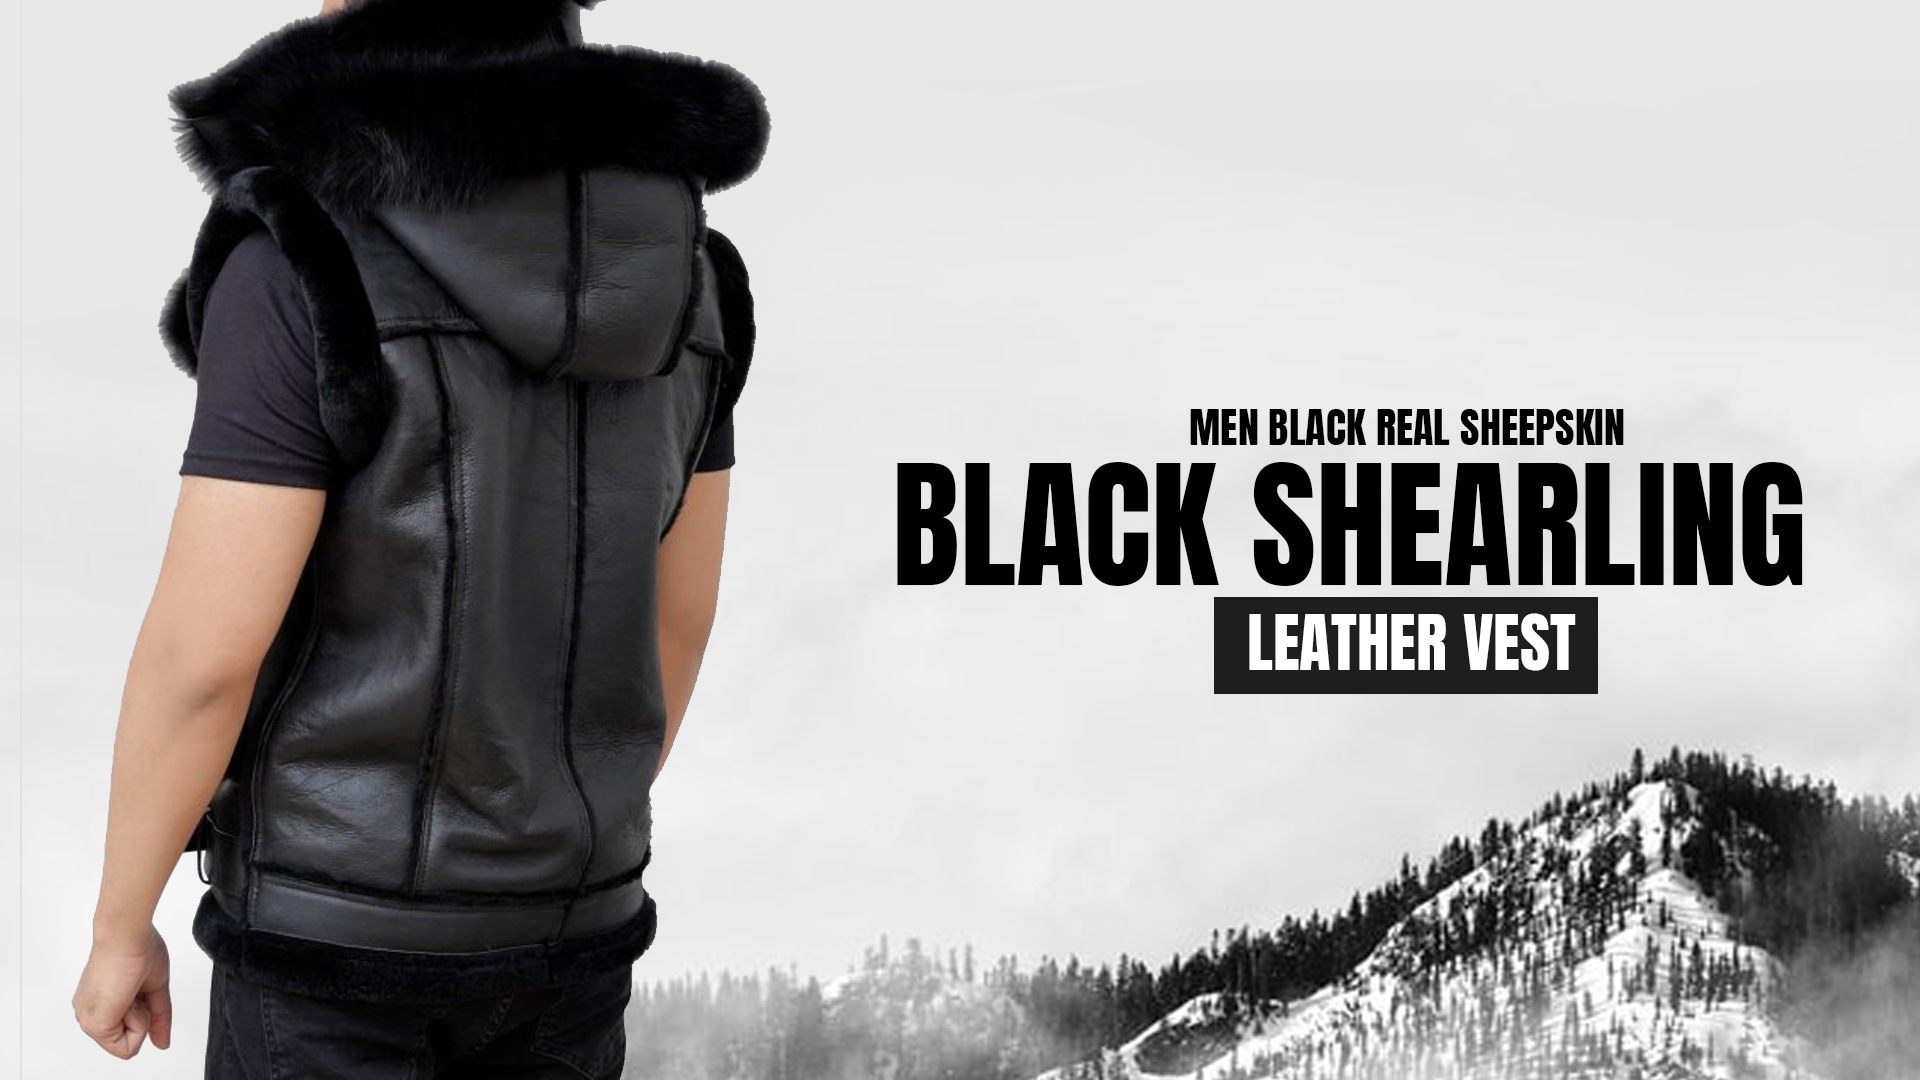 Men Black Real Sheepskin Black Shearling Leather Vest